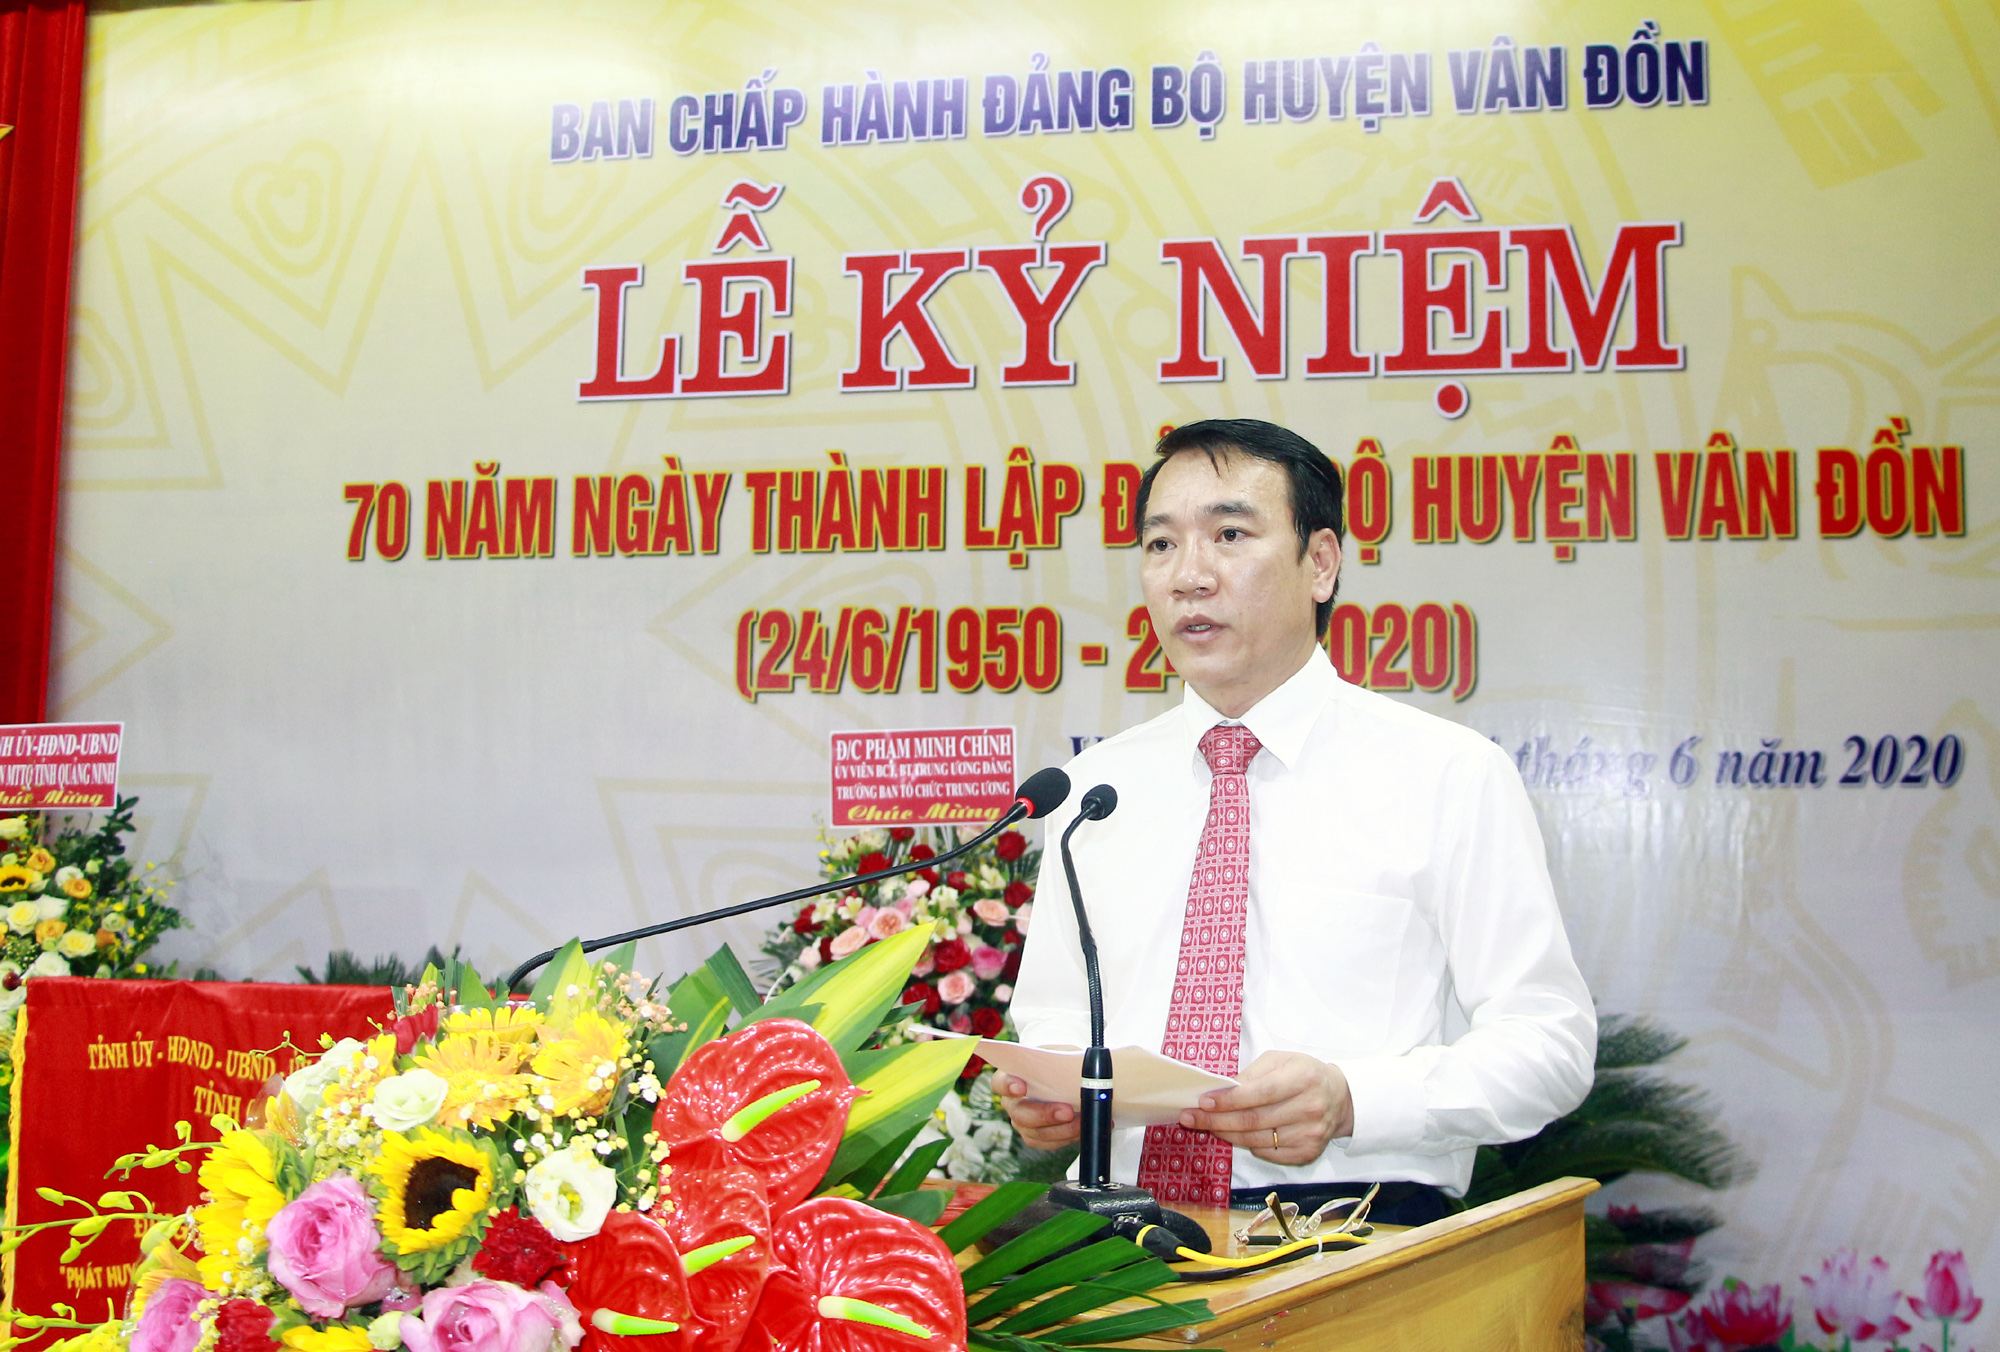 Đồng chí Tô Xuân Thao, Bí thư Huyện ủy, phát biểu ôn lại truyền thống 70 năm Ngày thành lập Đảng bộ huyện Vân Đồn.